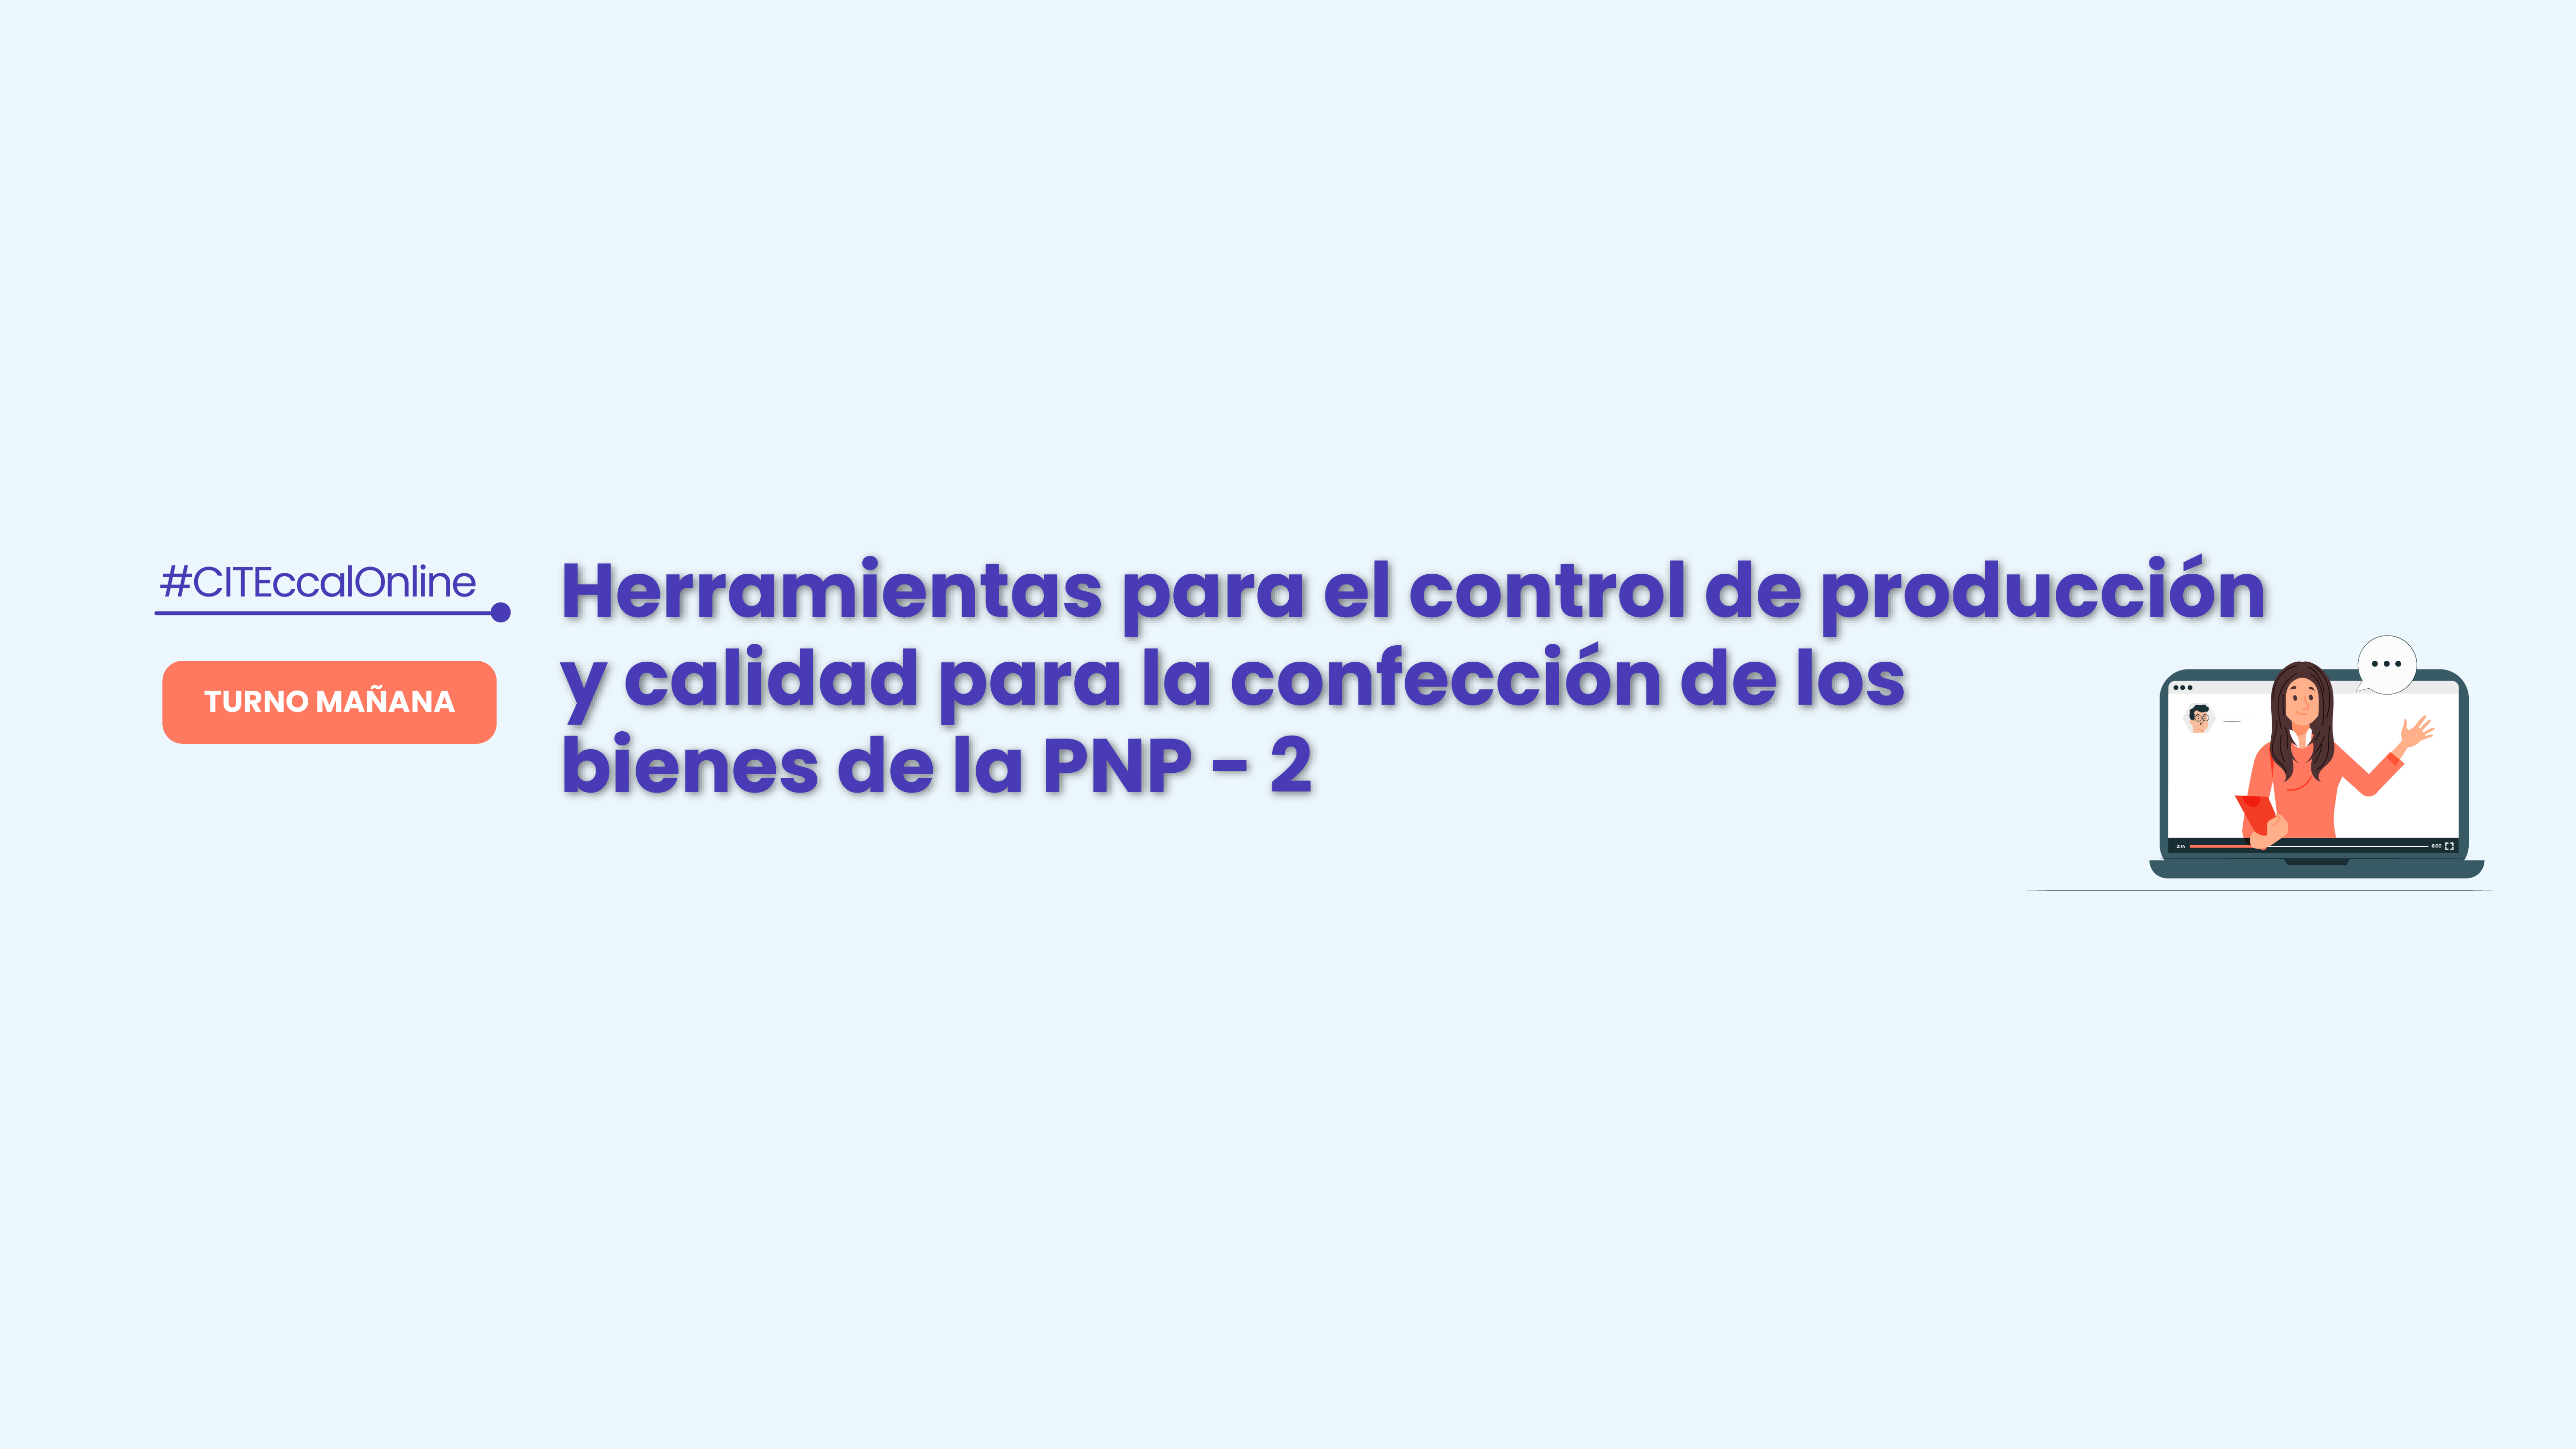 HERRAMIENTAS PARA EL CONTROL DE PRODUCCIÓN Y CALIDAD PARA LA CONFECCIÓN DE LOS BIENES DE LA PNP - 2